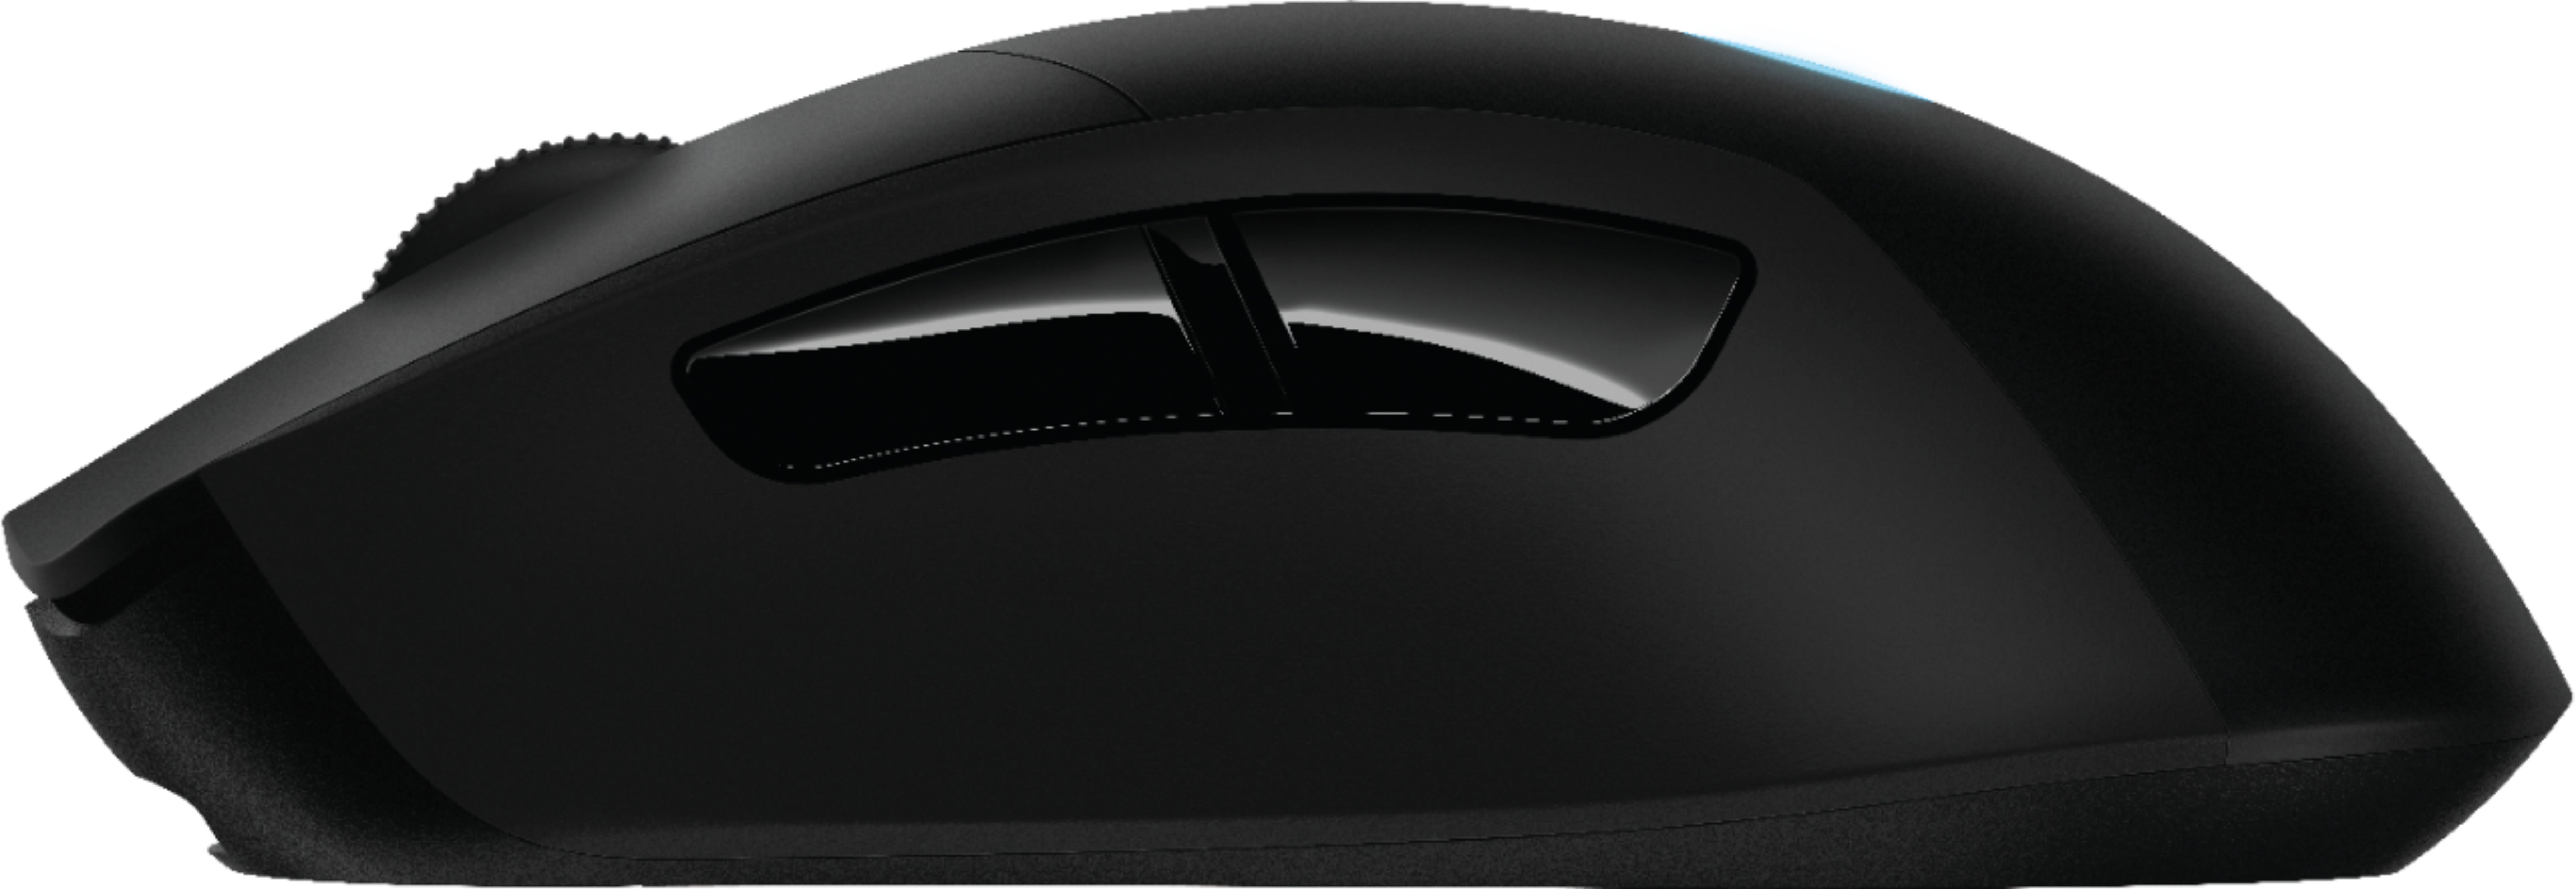 sensor middag Frastødende Best Buy: Logitech G403 (Hero) Wired Optical Gaming Mouse Black 910-005630